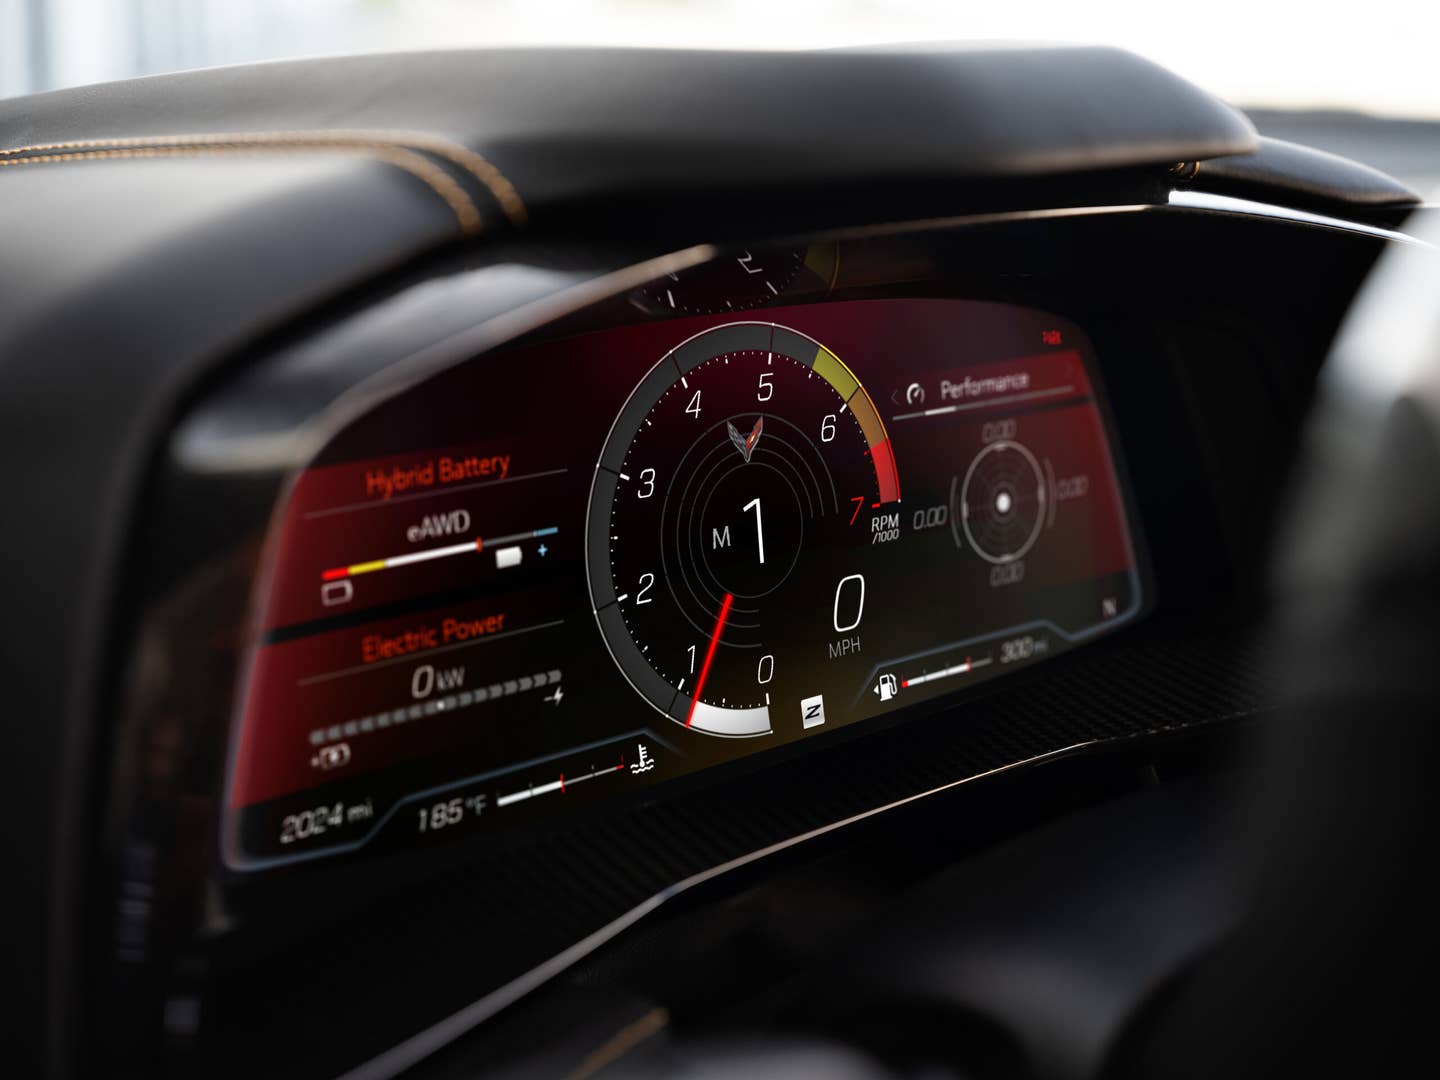 Detailní pohled na rozložení měřidel v aplikaci E-Ray Performance na obrazovce infotainmentu.  Zobrazen předprodukční model.  Skutečný model výroby se může lišit.  Modelový rok 2024 Corvette E-Ray k dispozici 2023.